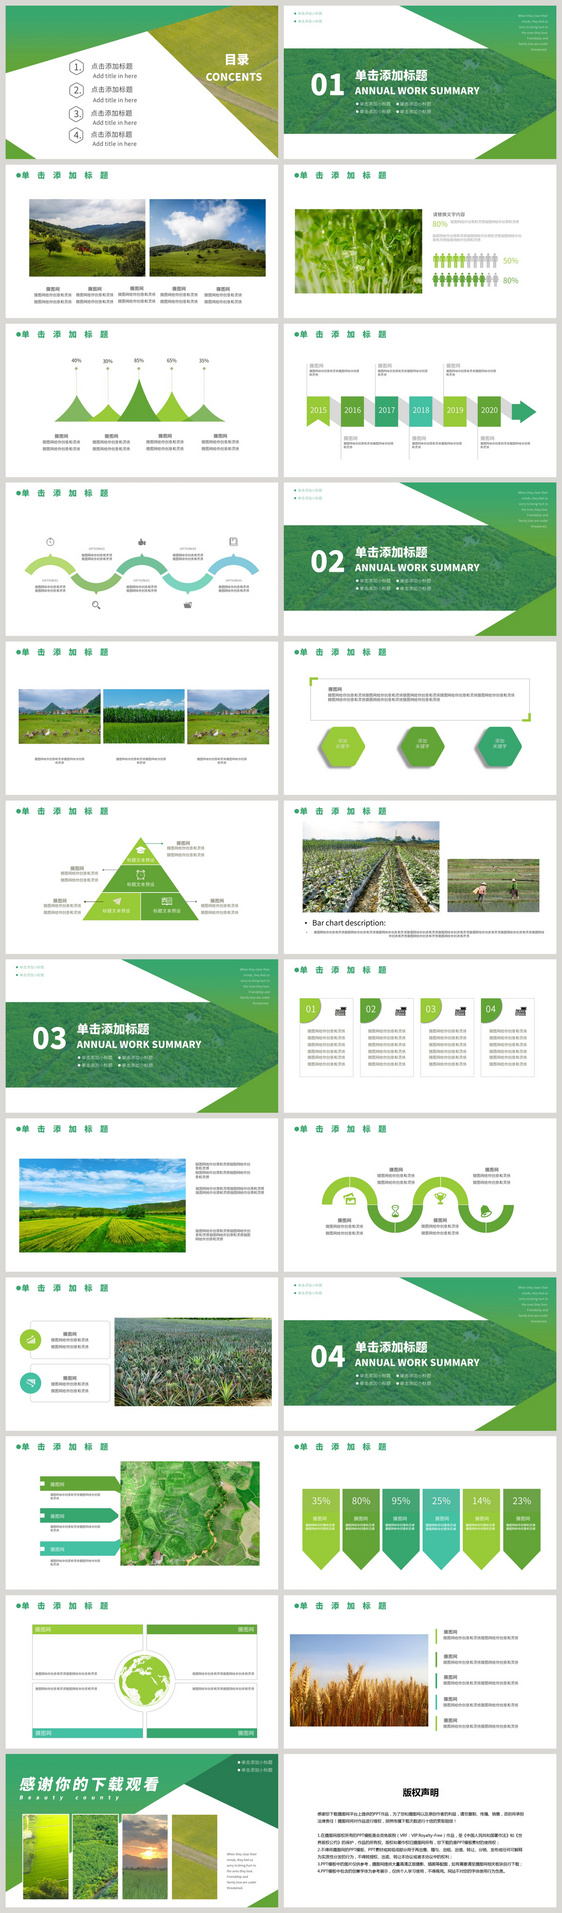 绿色美丽乡村项目规划ppt模板